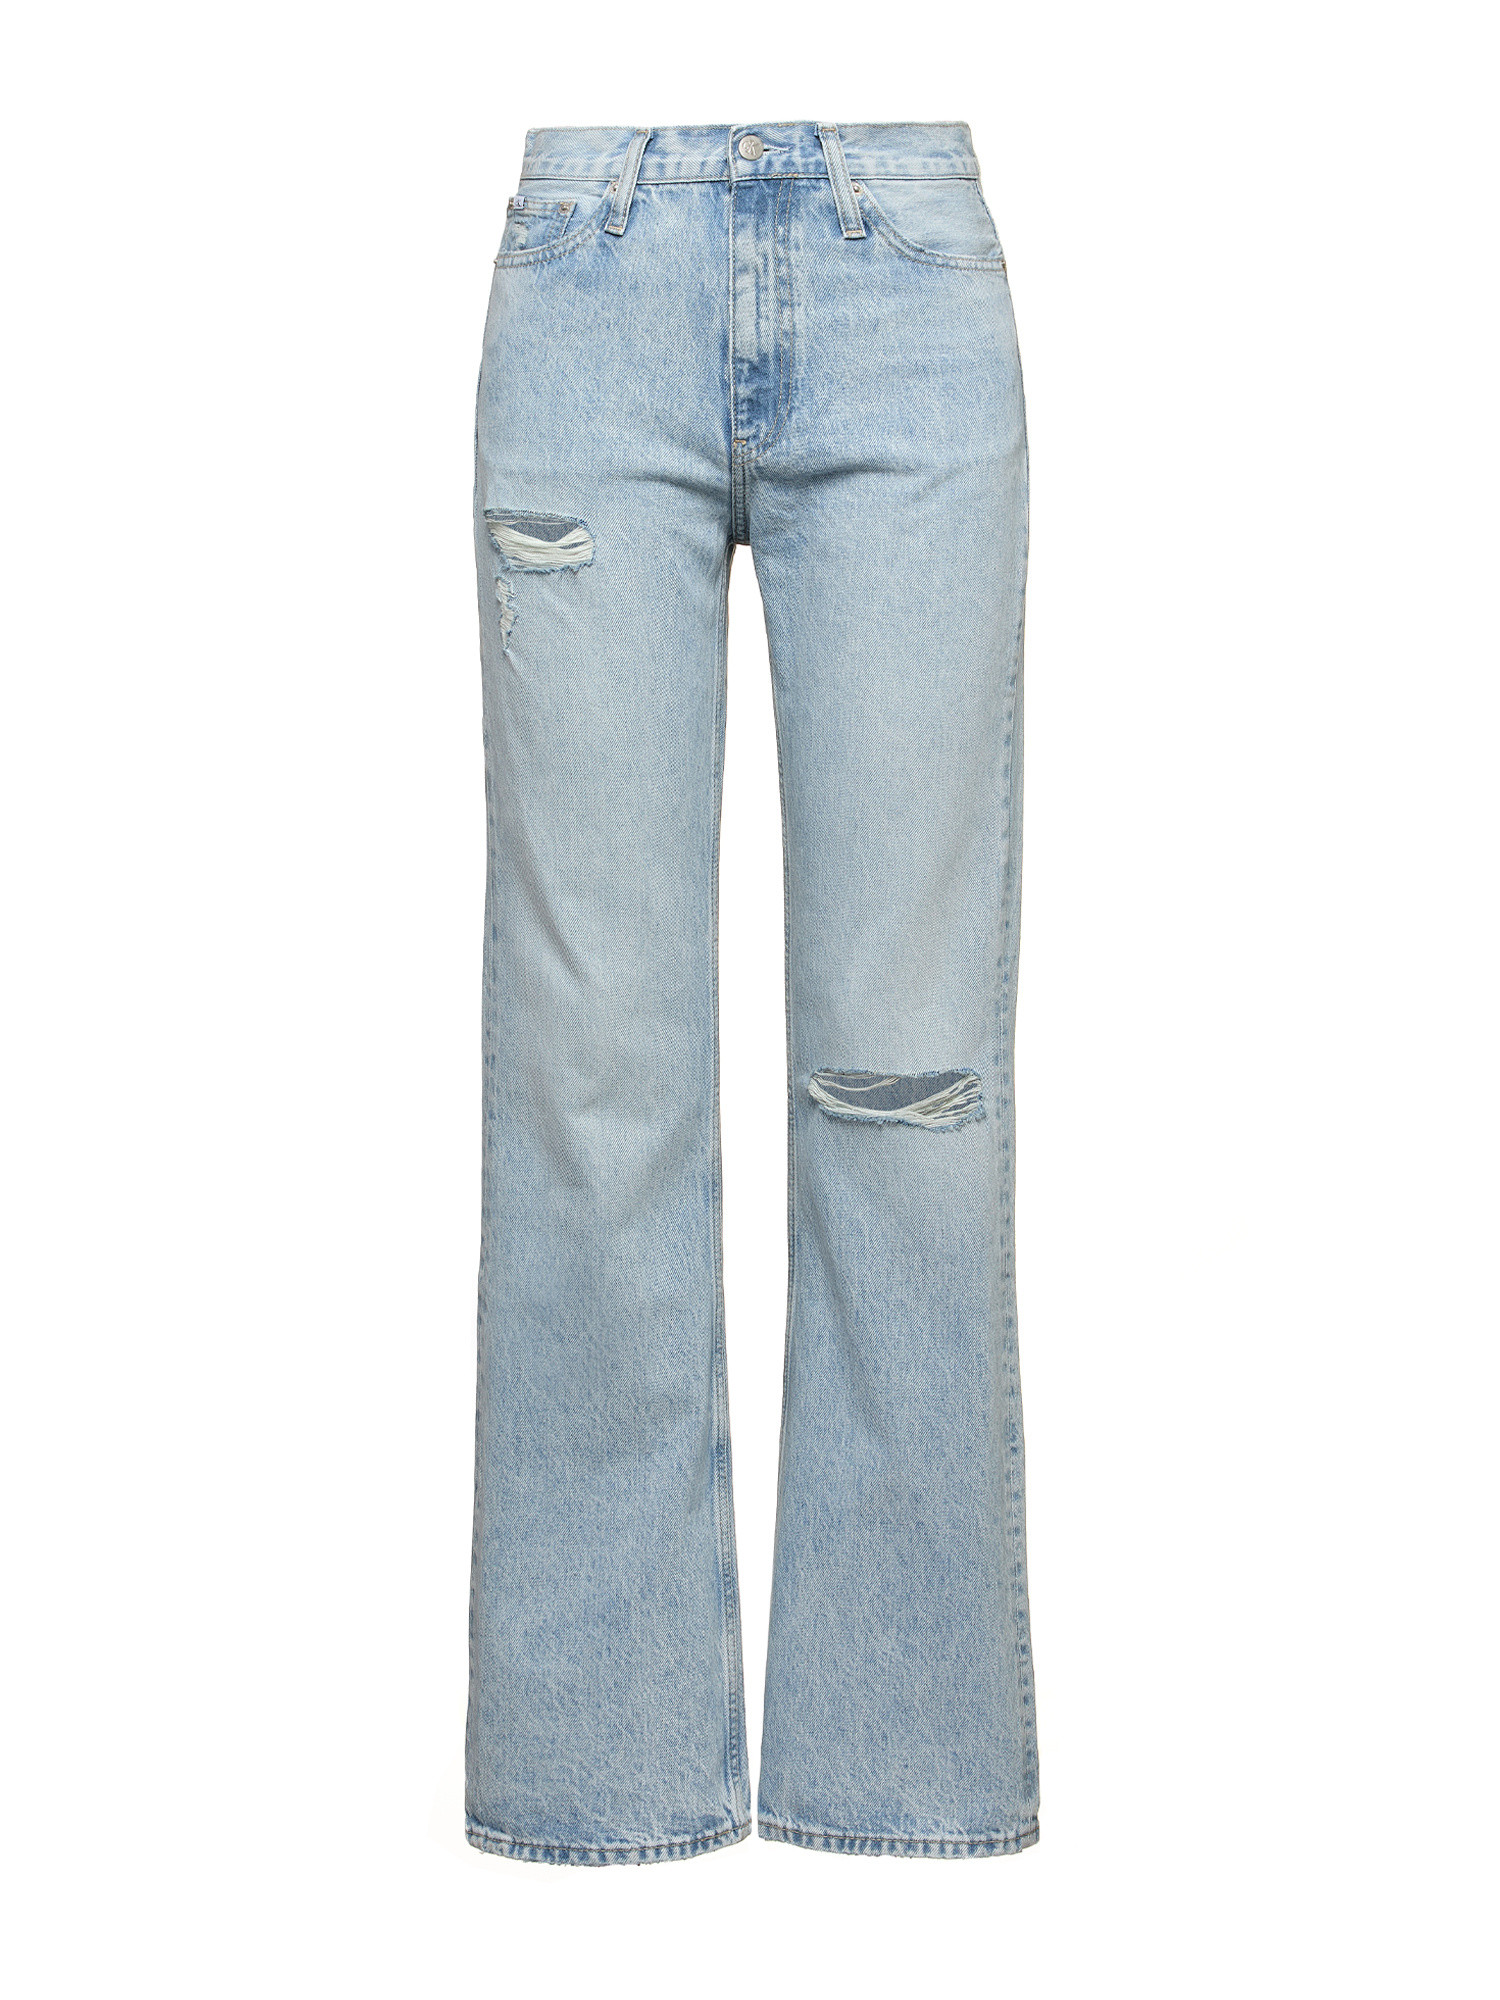 Calvin Klein Jeans -Five-pocket bootcut jeans, Light Blue, large image number 0